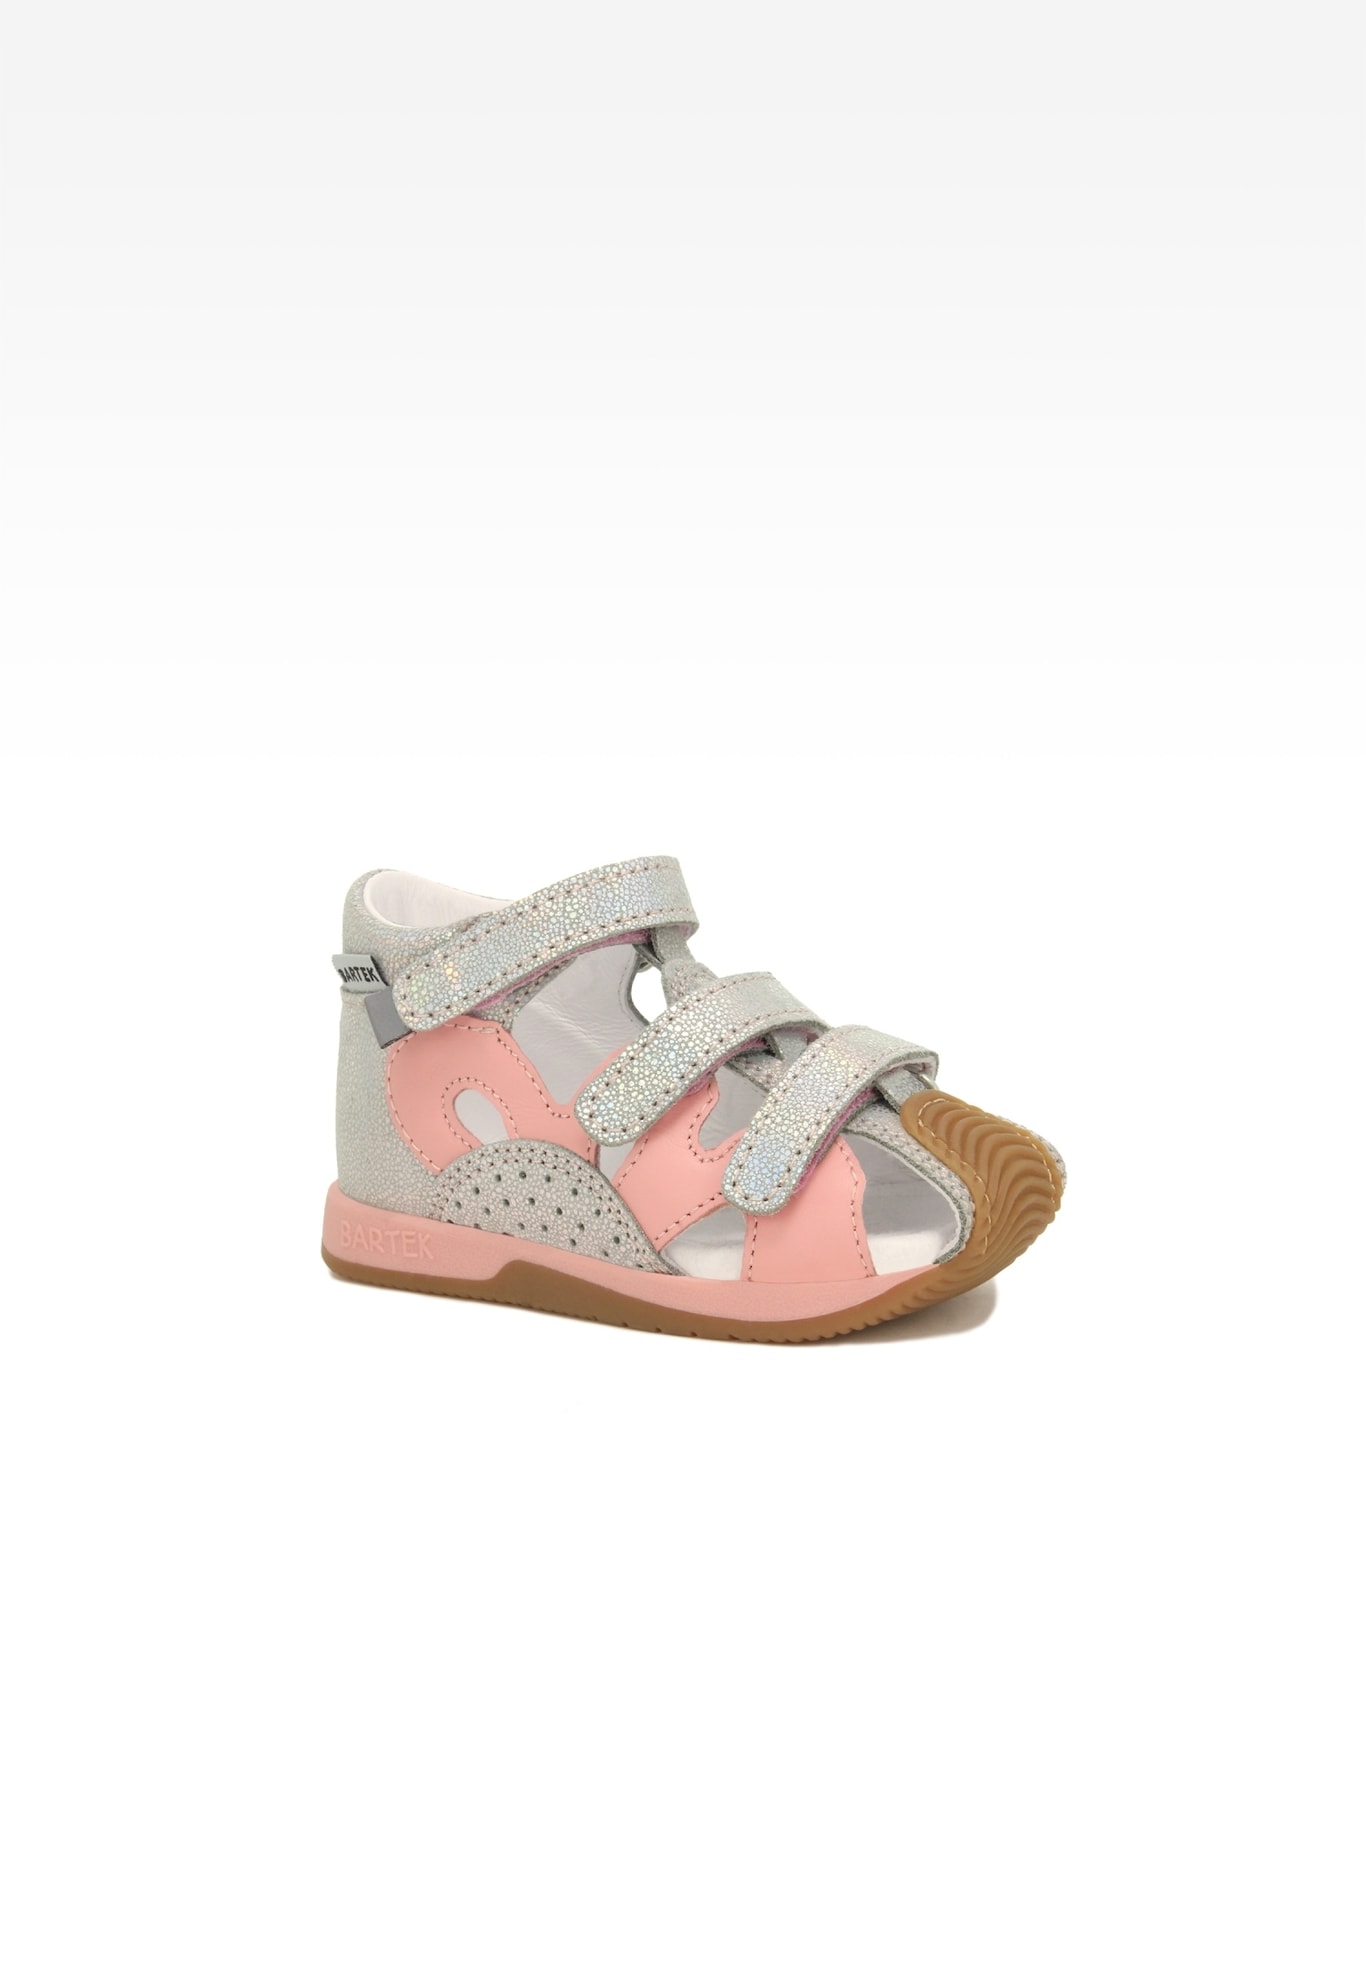 Sandały BARTEK 81021-006, dla dziewcząt, różowo-srebrny